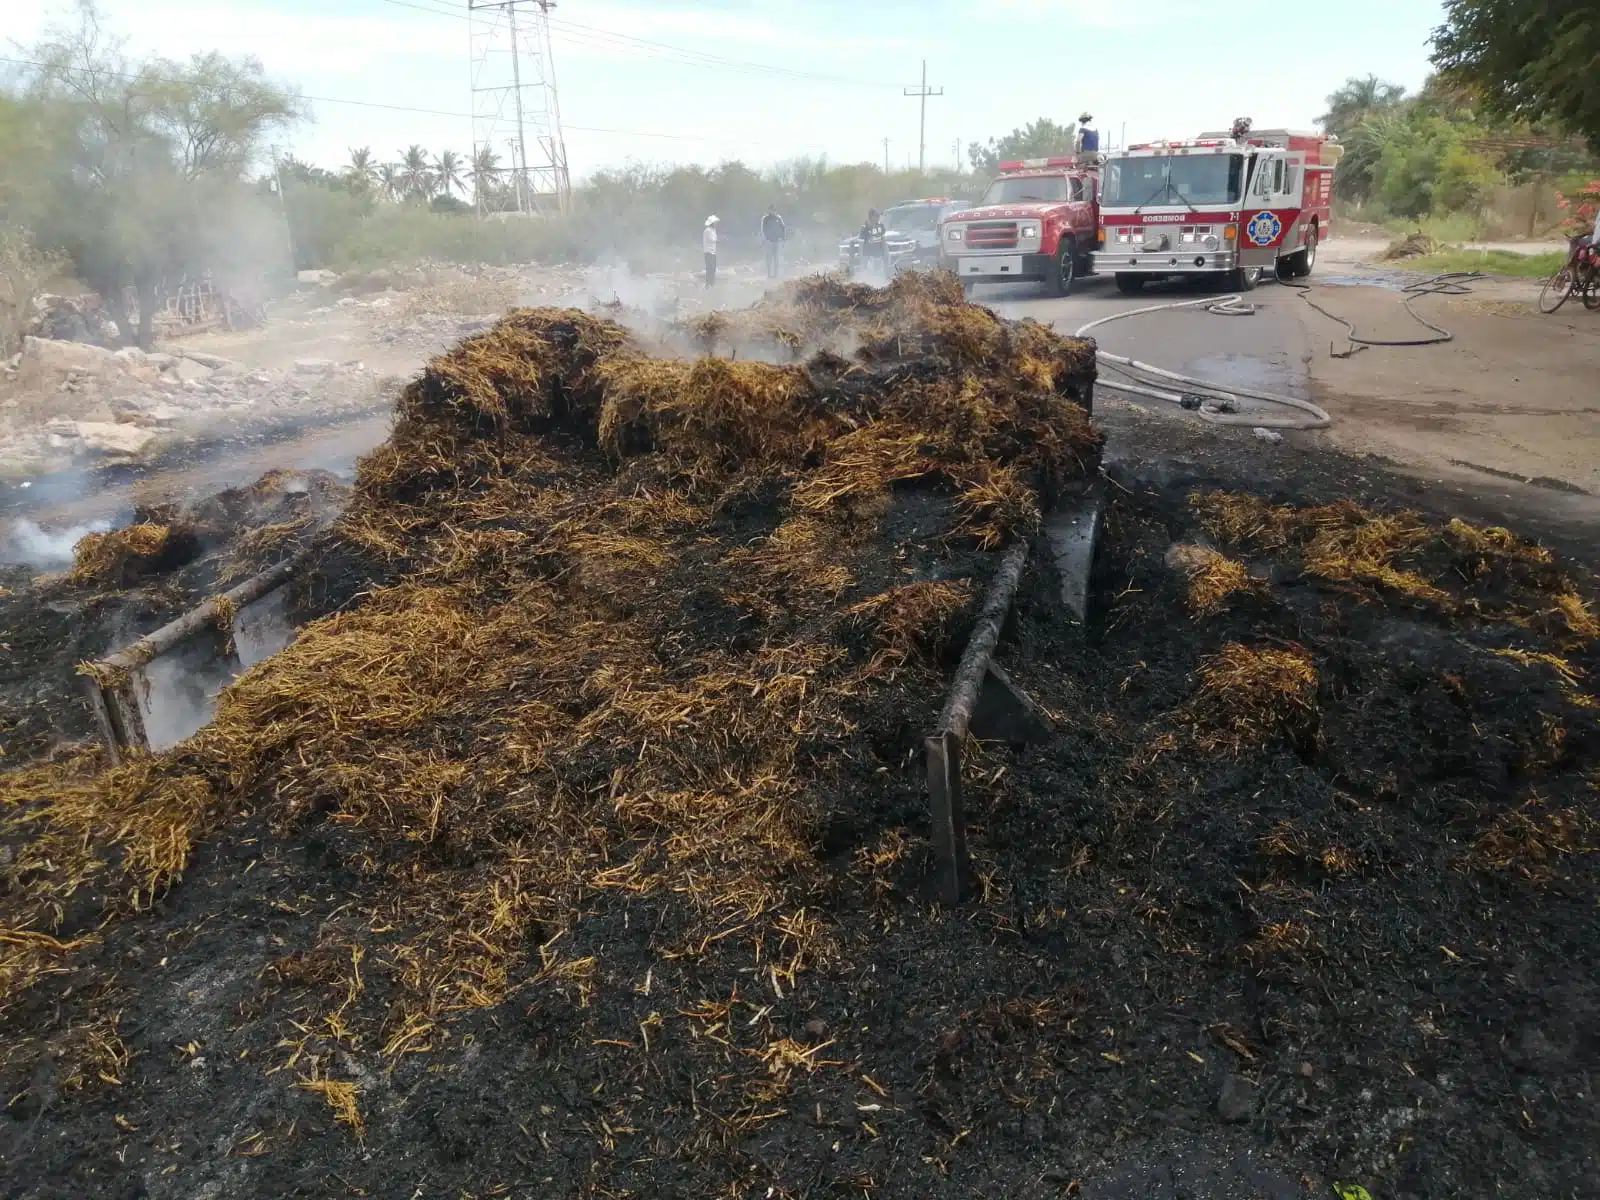 ¡Incendio voraz! Se queman decenas de pacas de frijol; ardieron junto con un remolque en Guasave